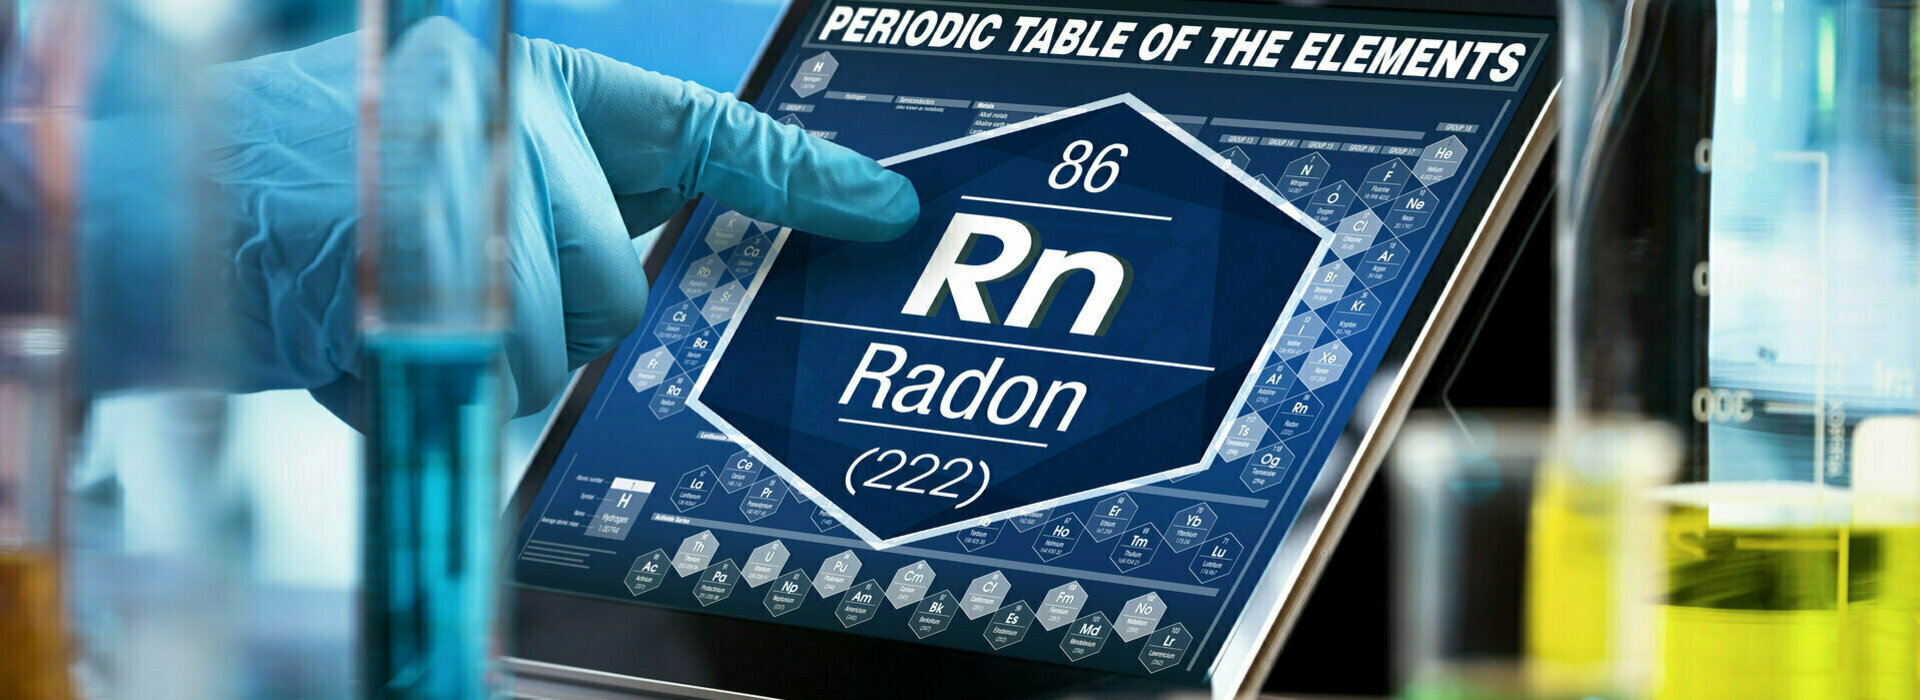 Le gaz radon est-il plus présent dans les vieux bâtiments ?